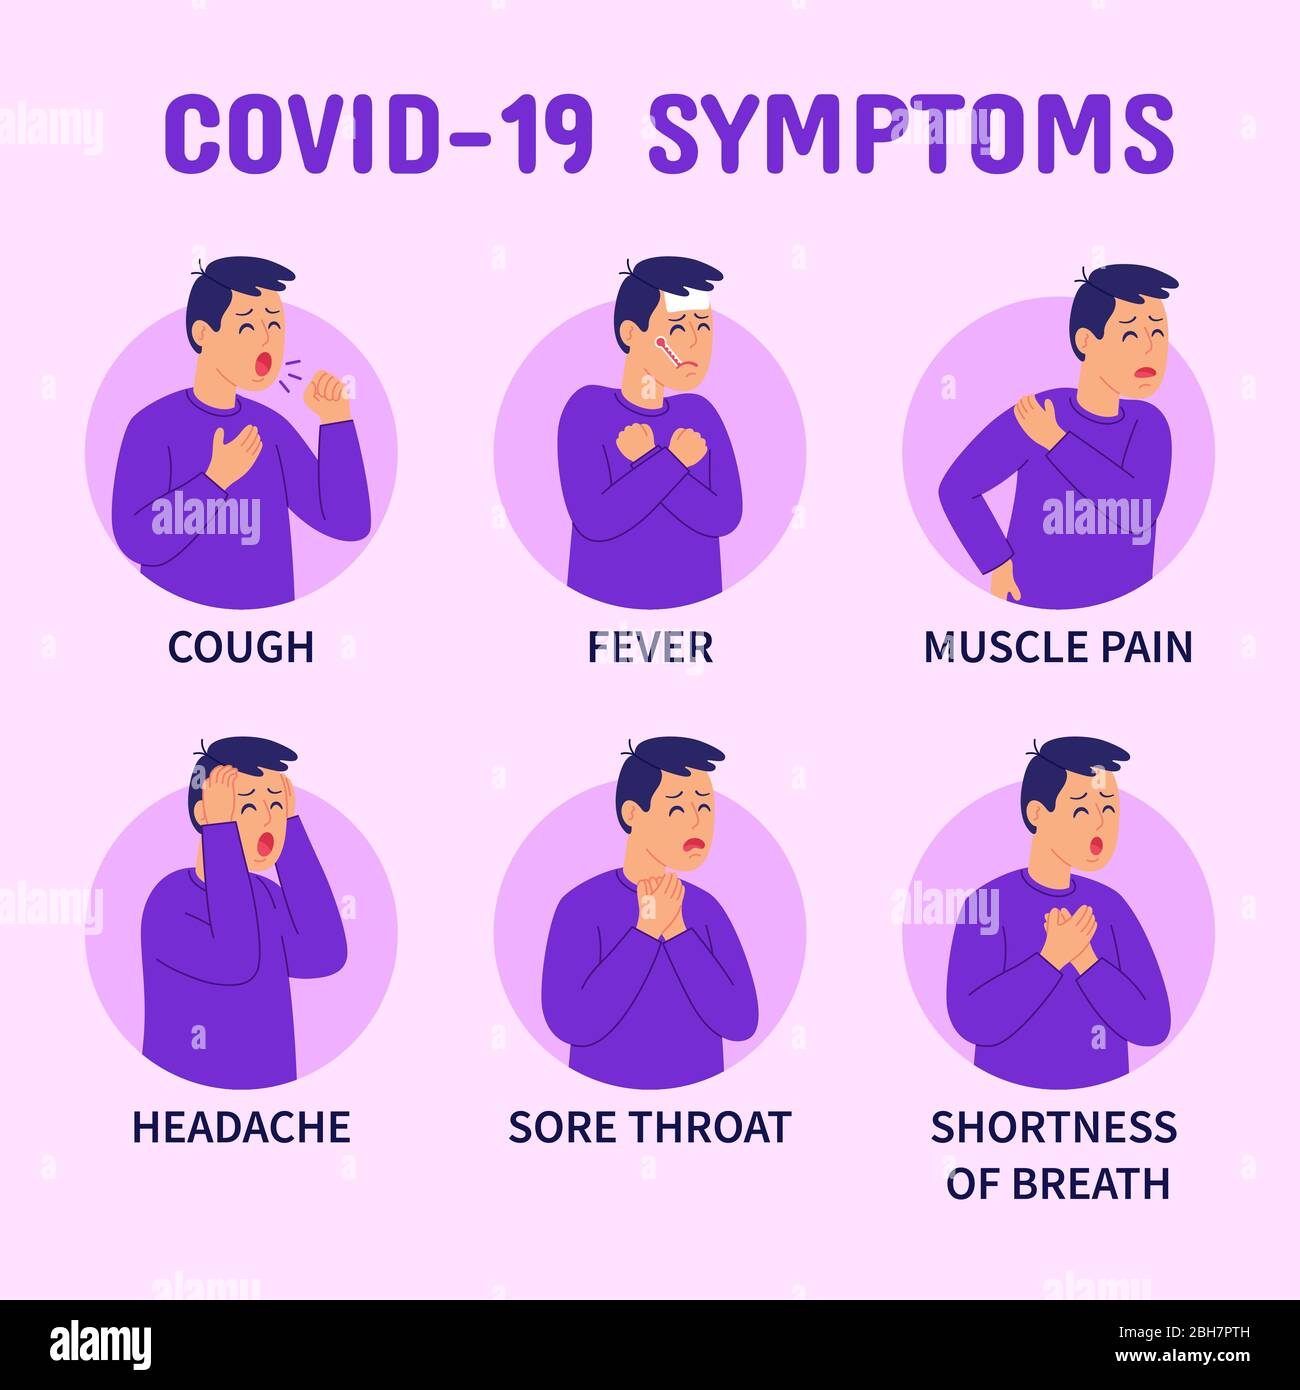 Infografica sui sintomi di coronavirus COVID-19. Sintomi : tosse, febbre, dolore muscolare, mal di testa, mal di gola, respiro corto. Illustrazione Vettoriale